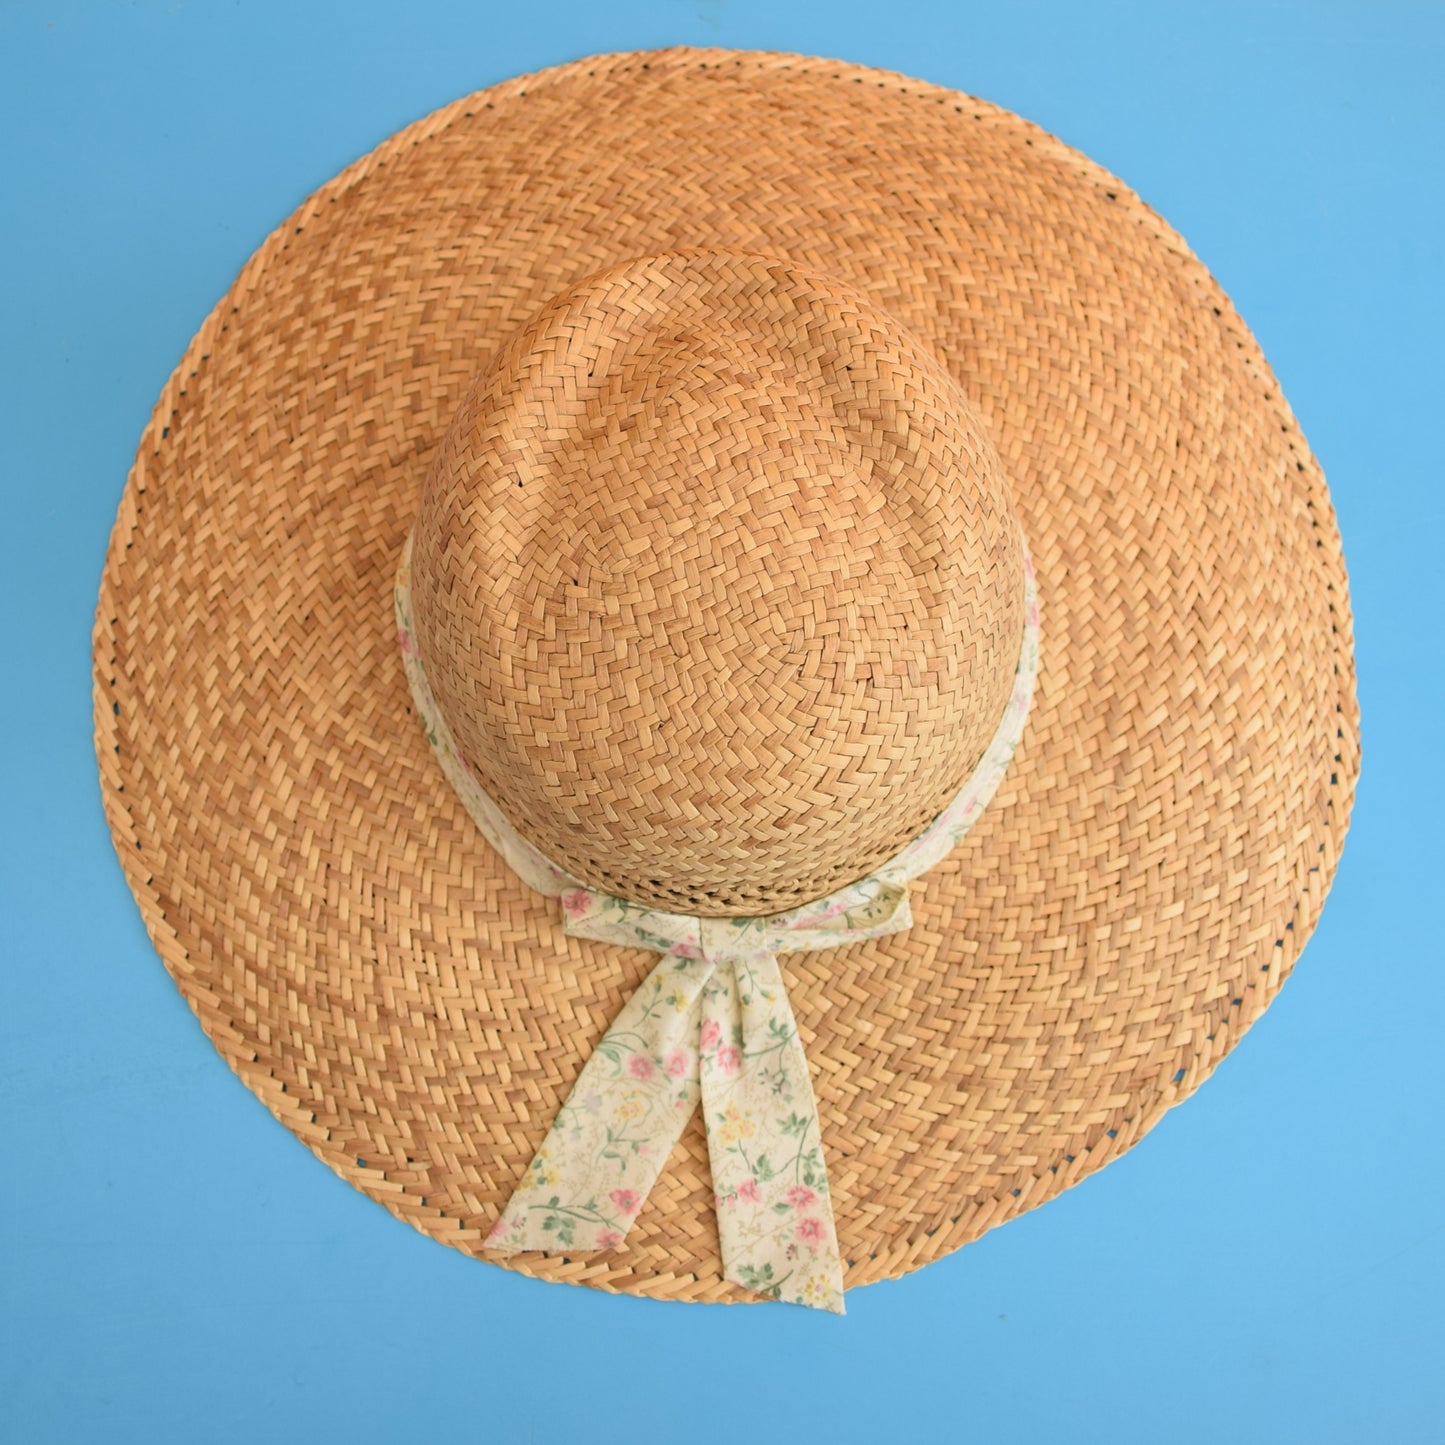 Vintage 1980s Straw Hat - Summer